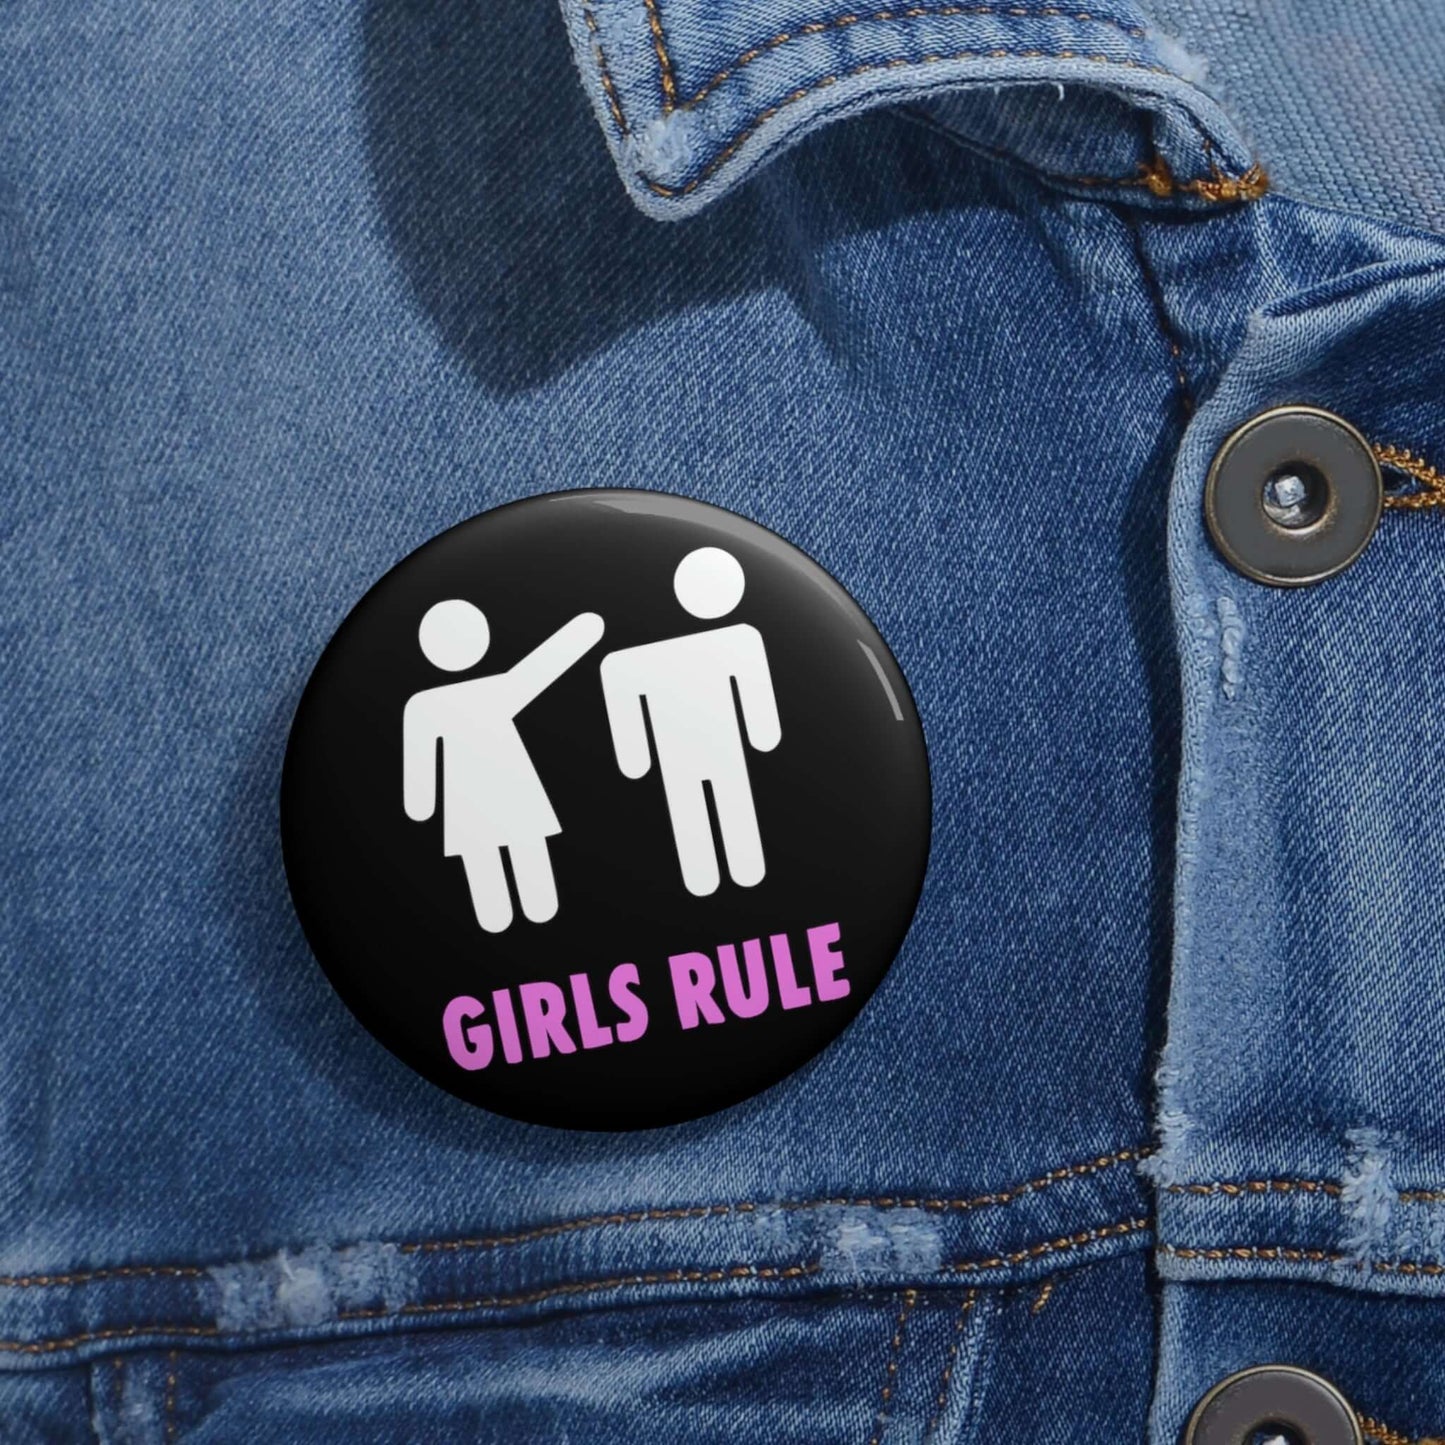 Girls rule pin button